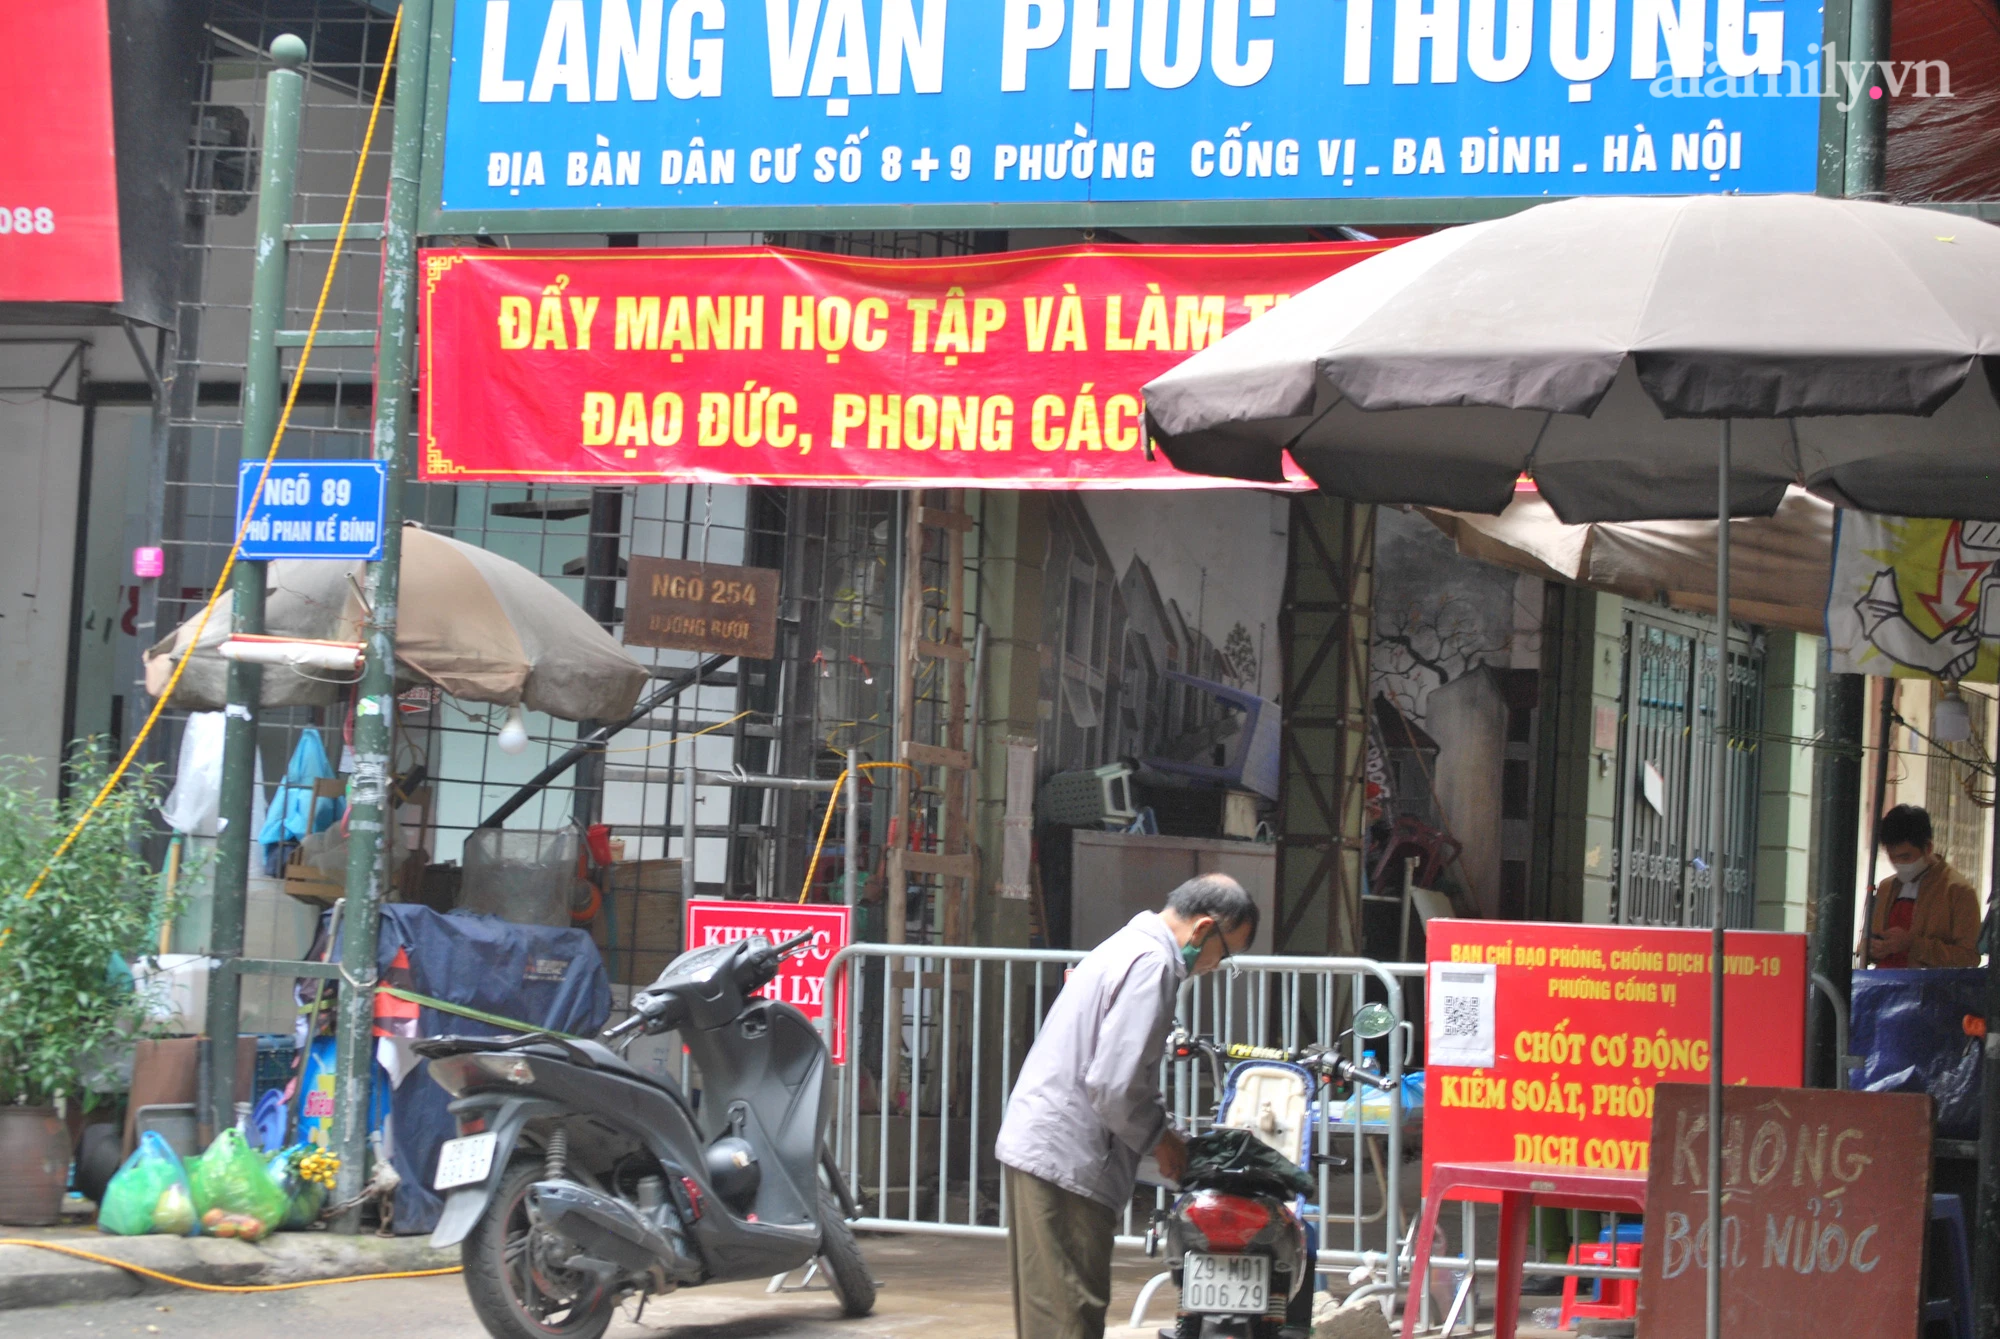 Ngõ 89 Phan Kế Bính đã được lập chốt